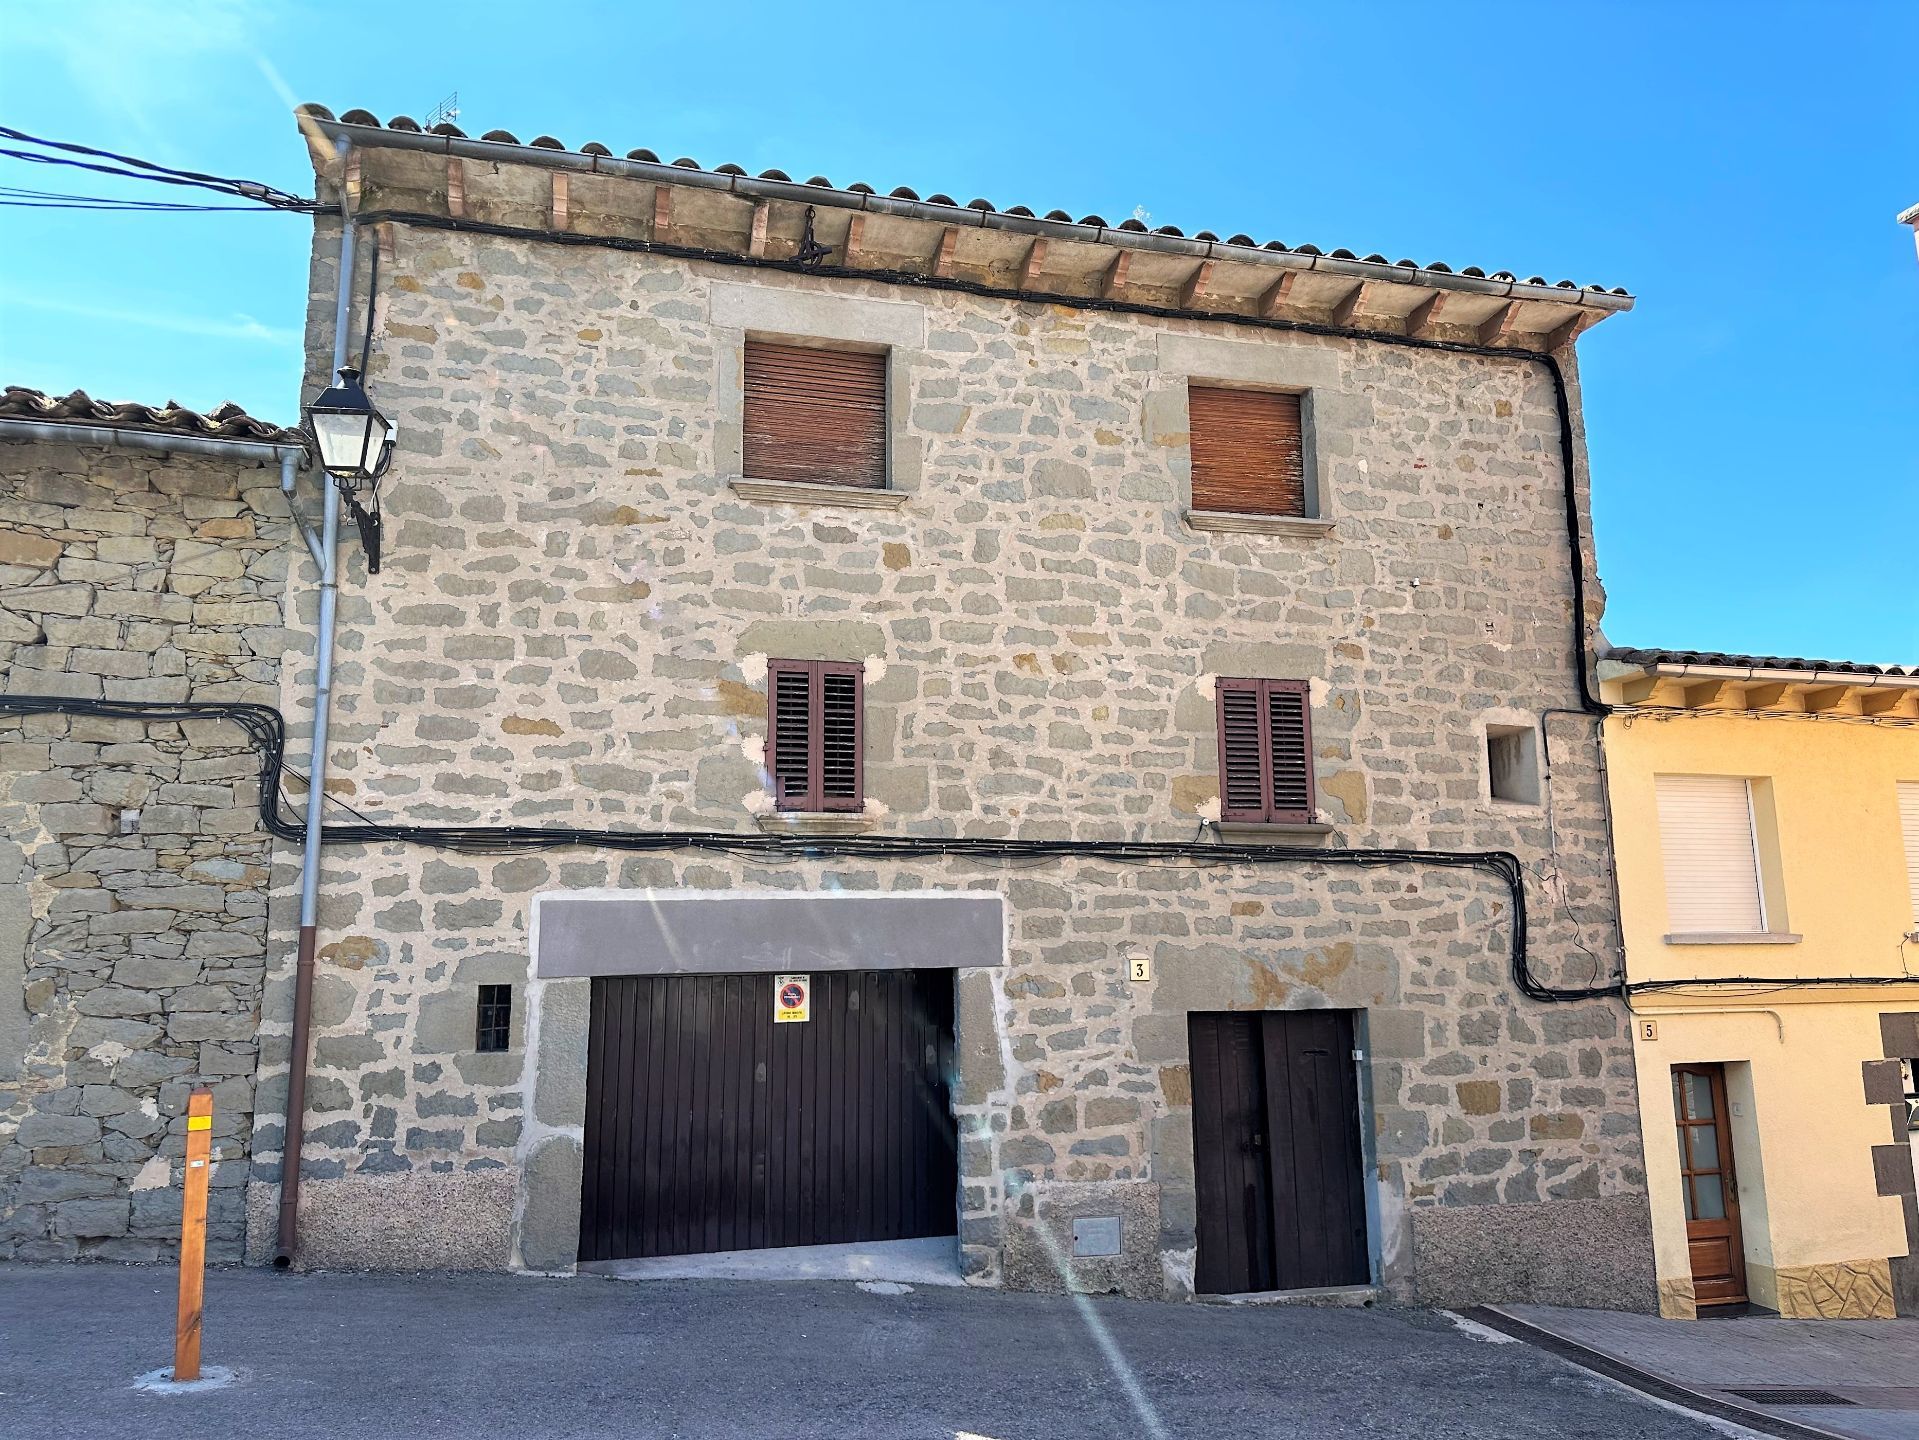 Vooraanzicht van resale huis in L'Esquirol in Spanje, gelegen aan de  Costa Brava